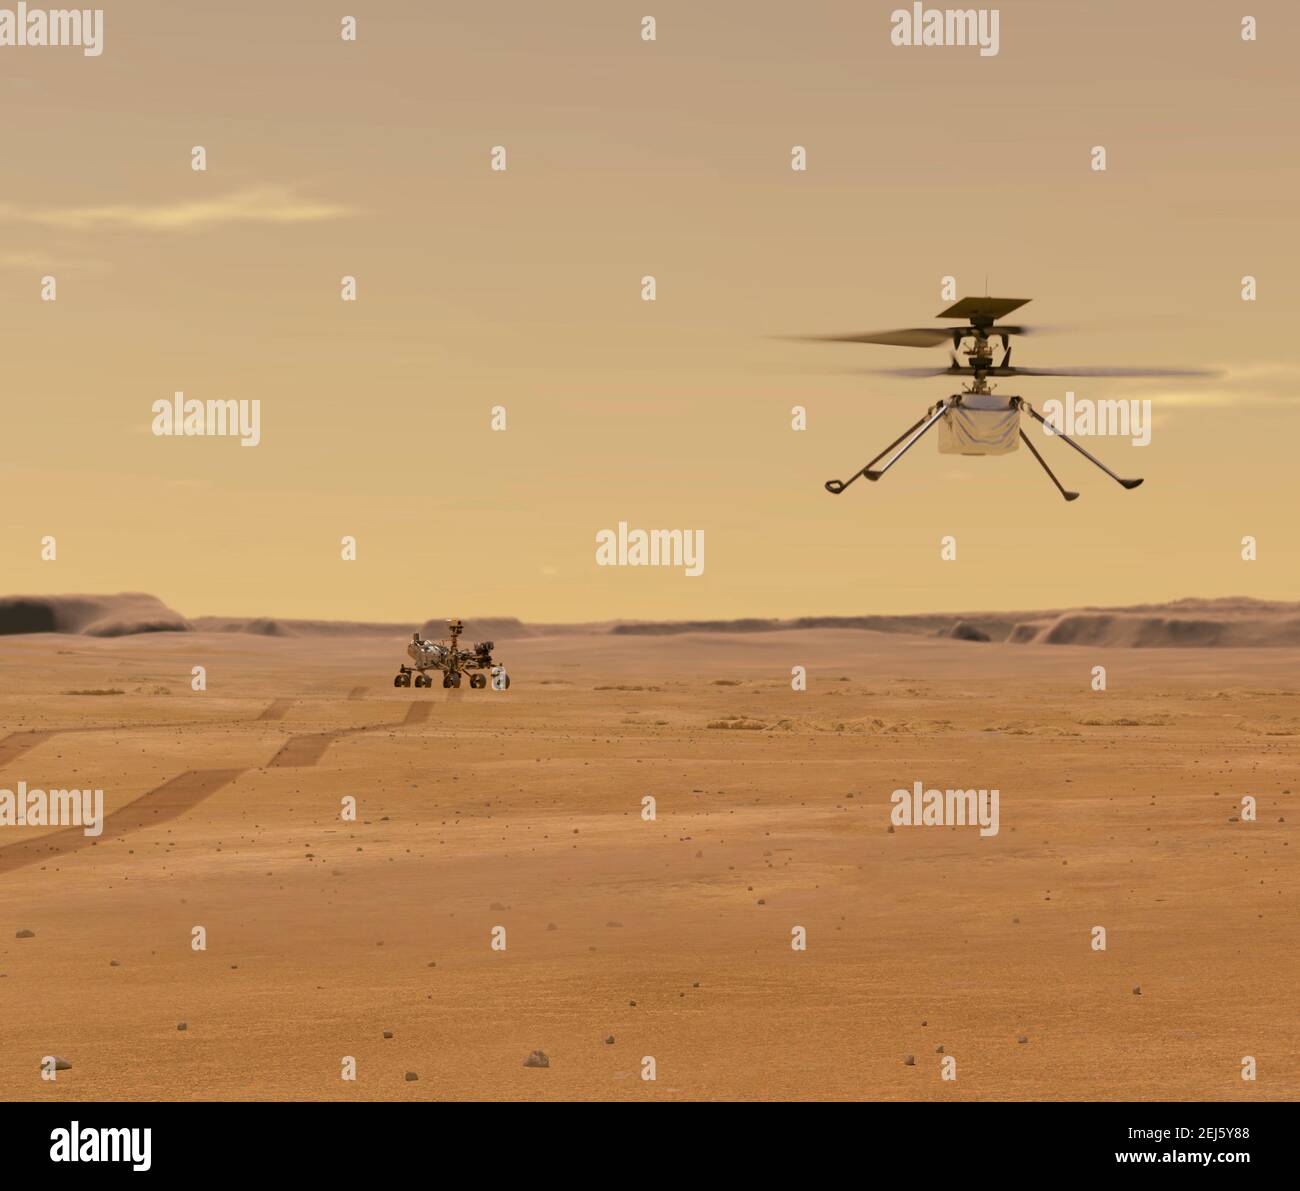 Illustrazione artistica dell'elicottero Mars Ingenuity della NASA in volo mentre la perseveranza rover si allontana. La perseveranza Mars rover sbarcò con successo il 18 febbraio 2021. Ingegnosità, sarà il primo velivolo a tentare un volo controllato su un altro pianeta. Foto Stock